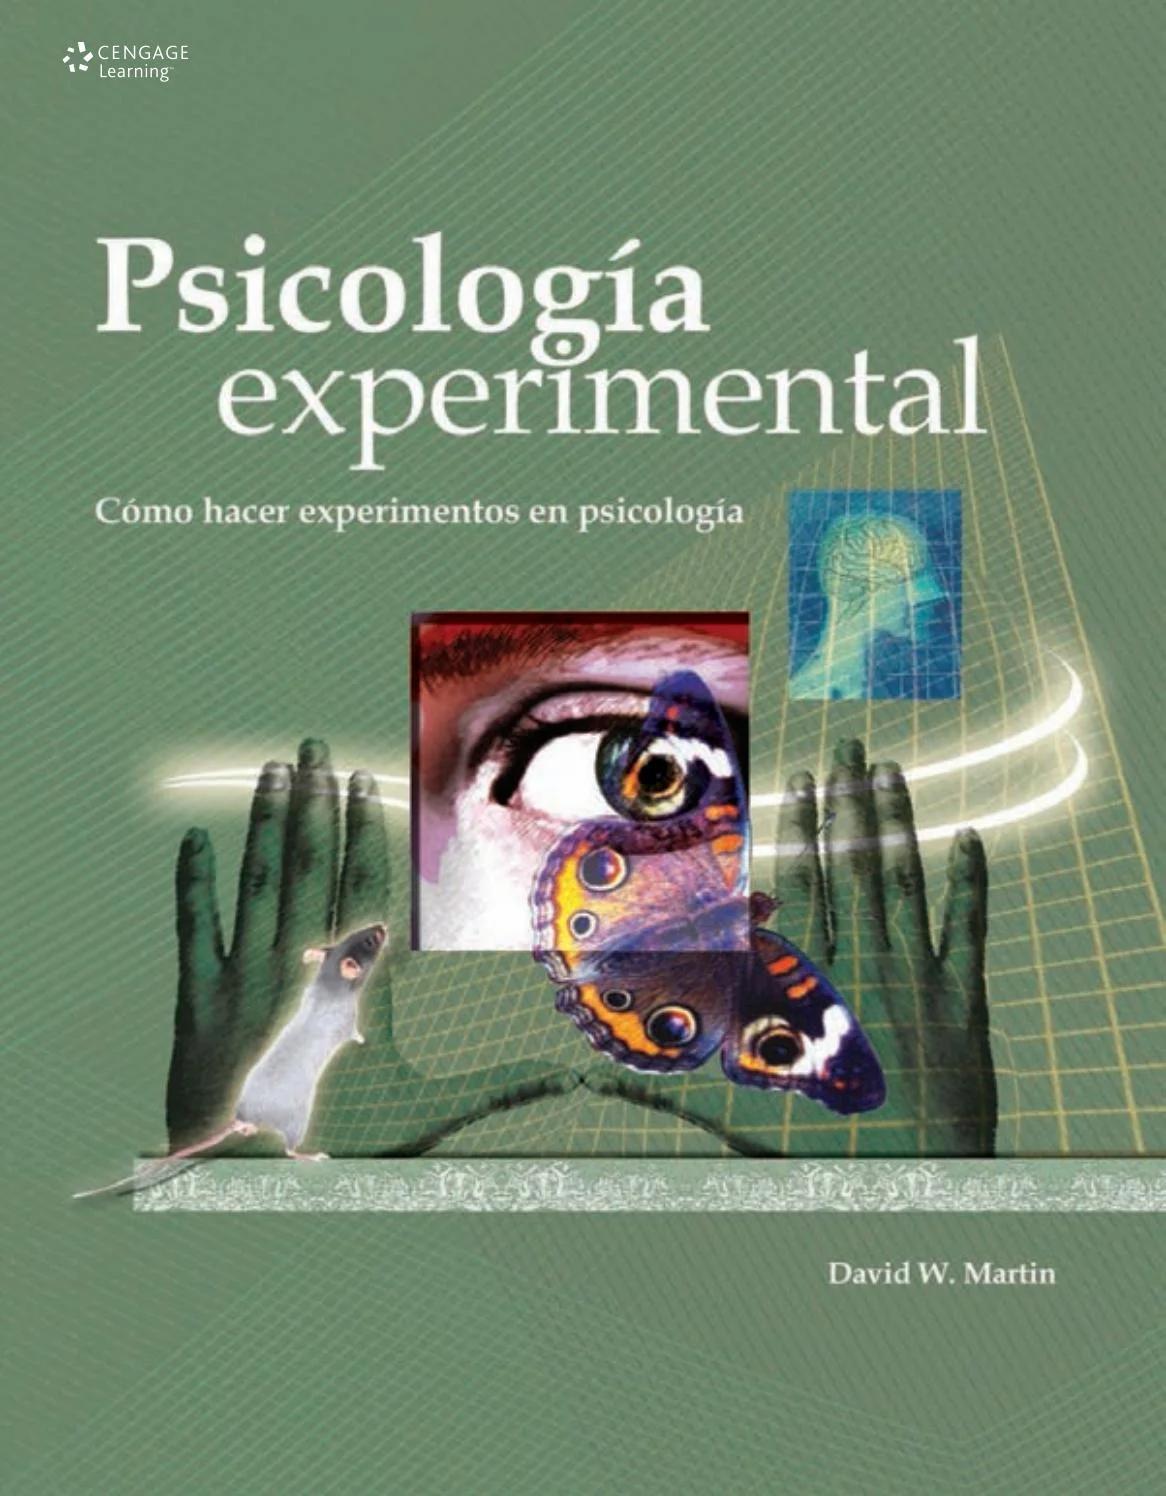 psicologia experimental ejemplos de experimentos - Qué experimento social puedo hacer